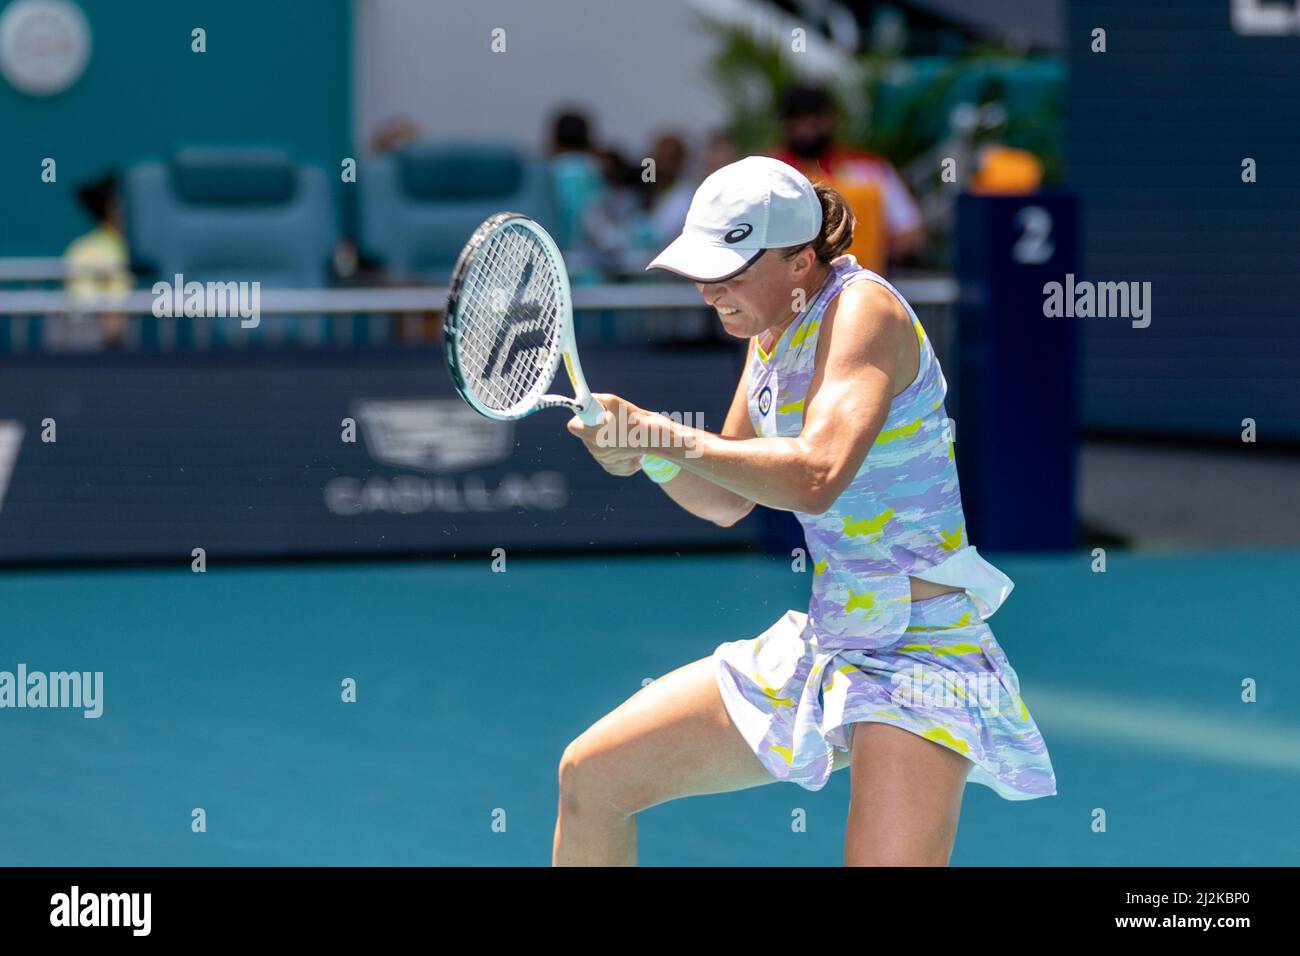 Miami Gardens, FL, USA. 2nd Apr, 2022. Naomi Osaka (JPN) vs Iga Swiatek (POL) during the world tennis tournament at the 2022 Miami Open powered by Itau